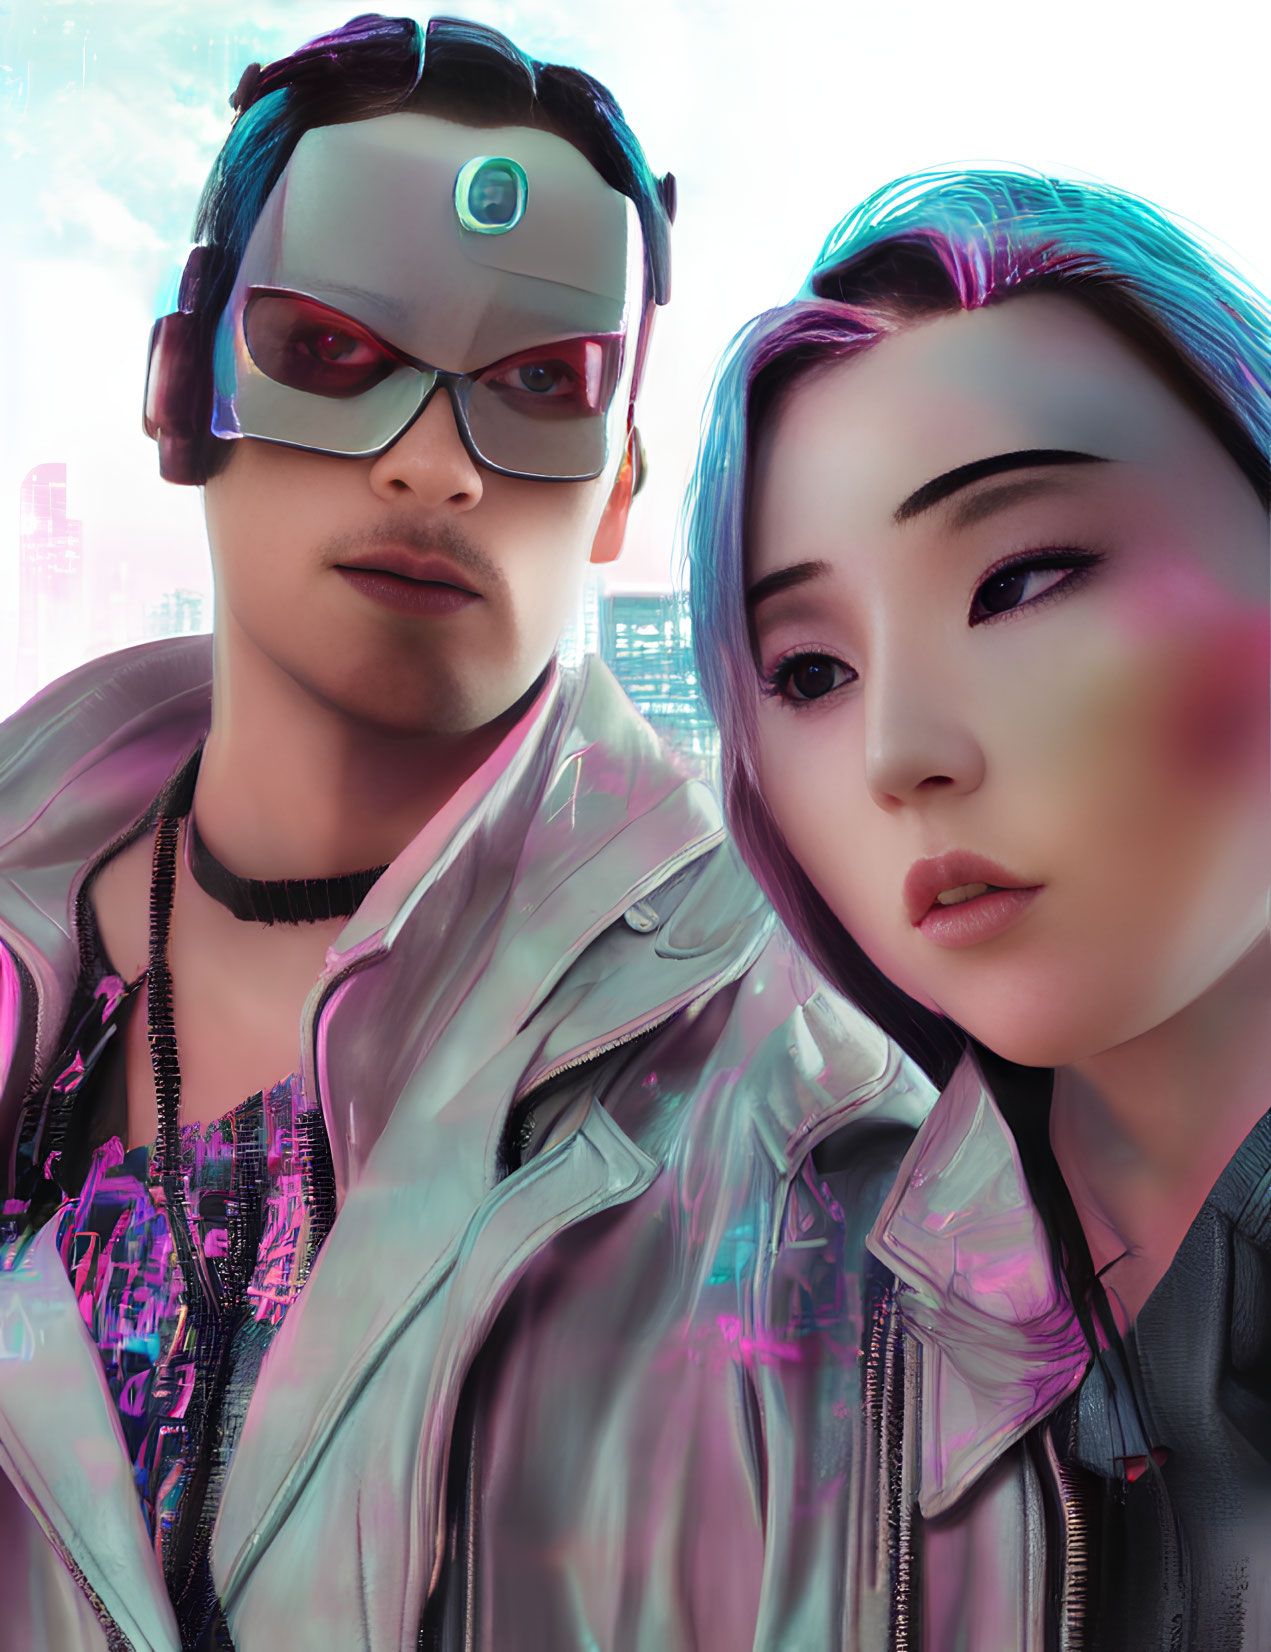 Futuristic cyberpunk individuals in neon-lit cityscape